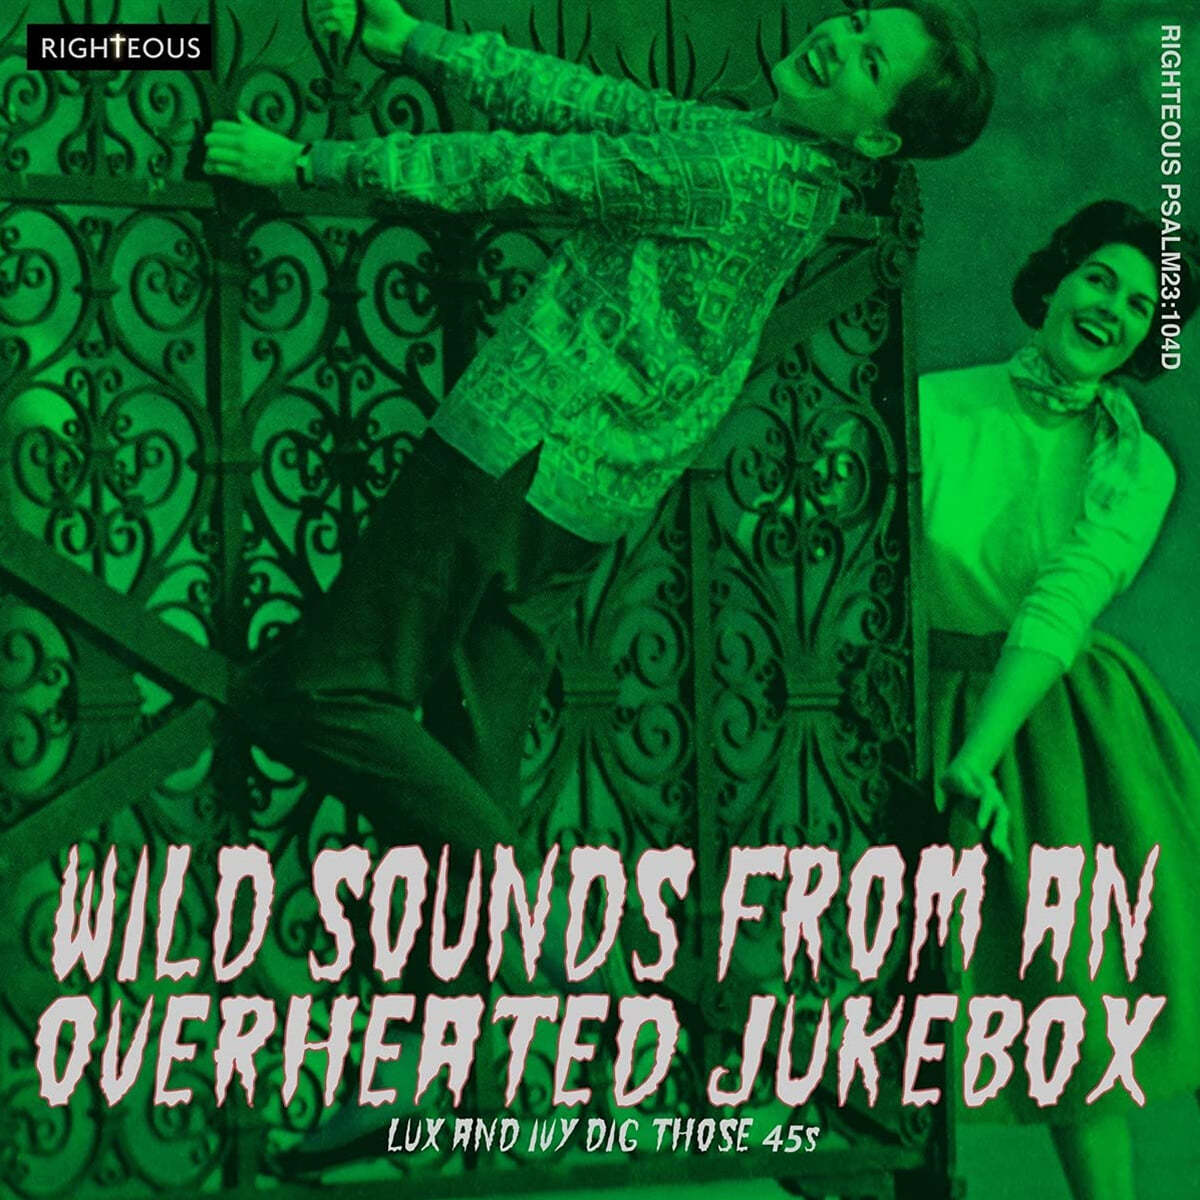 와일드 사운즈 프롬 오버히트 쥬크박스 (Wild Sounds From An Overheated Jukebox - Lux And Ivy Dig Those 45s) 